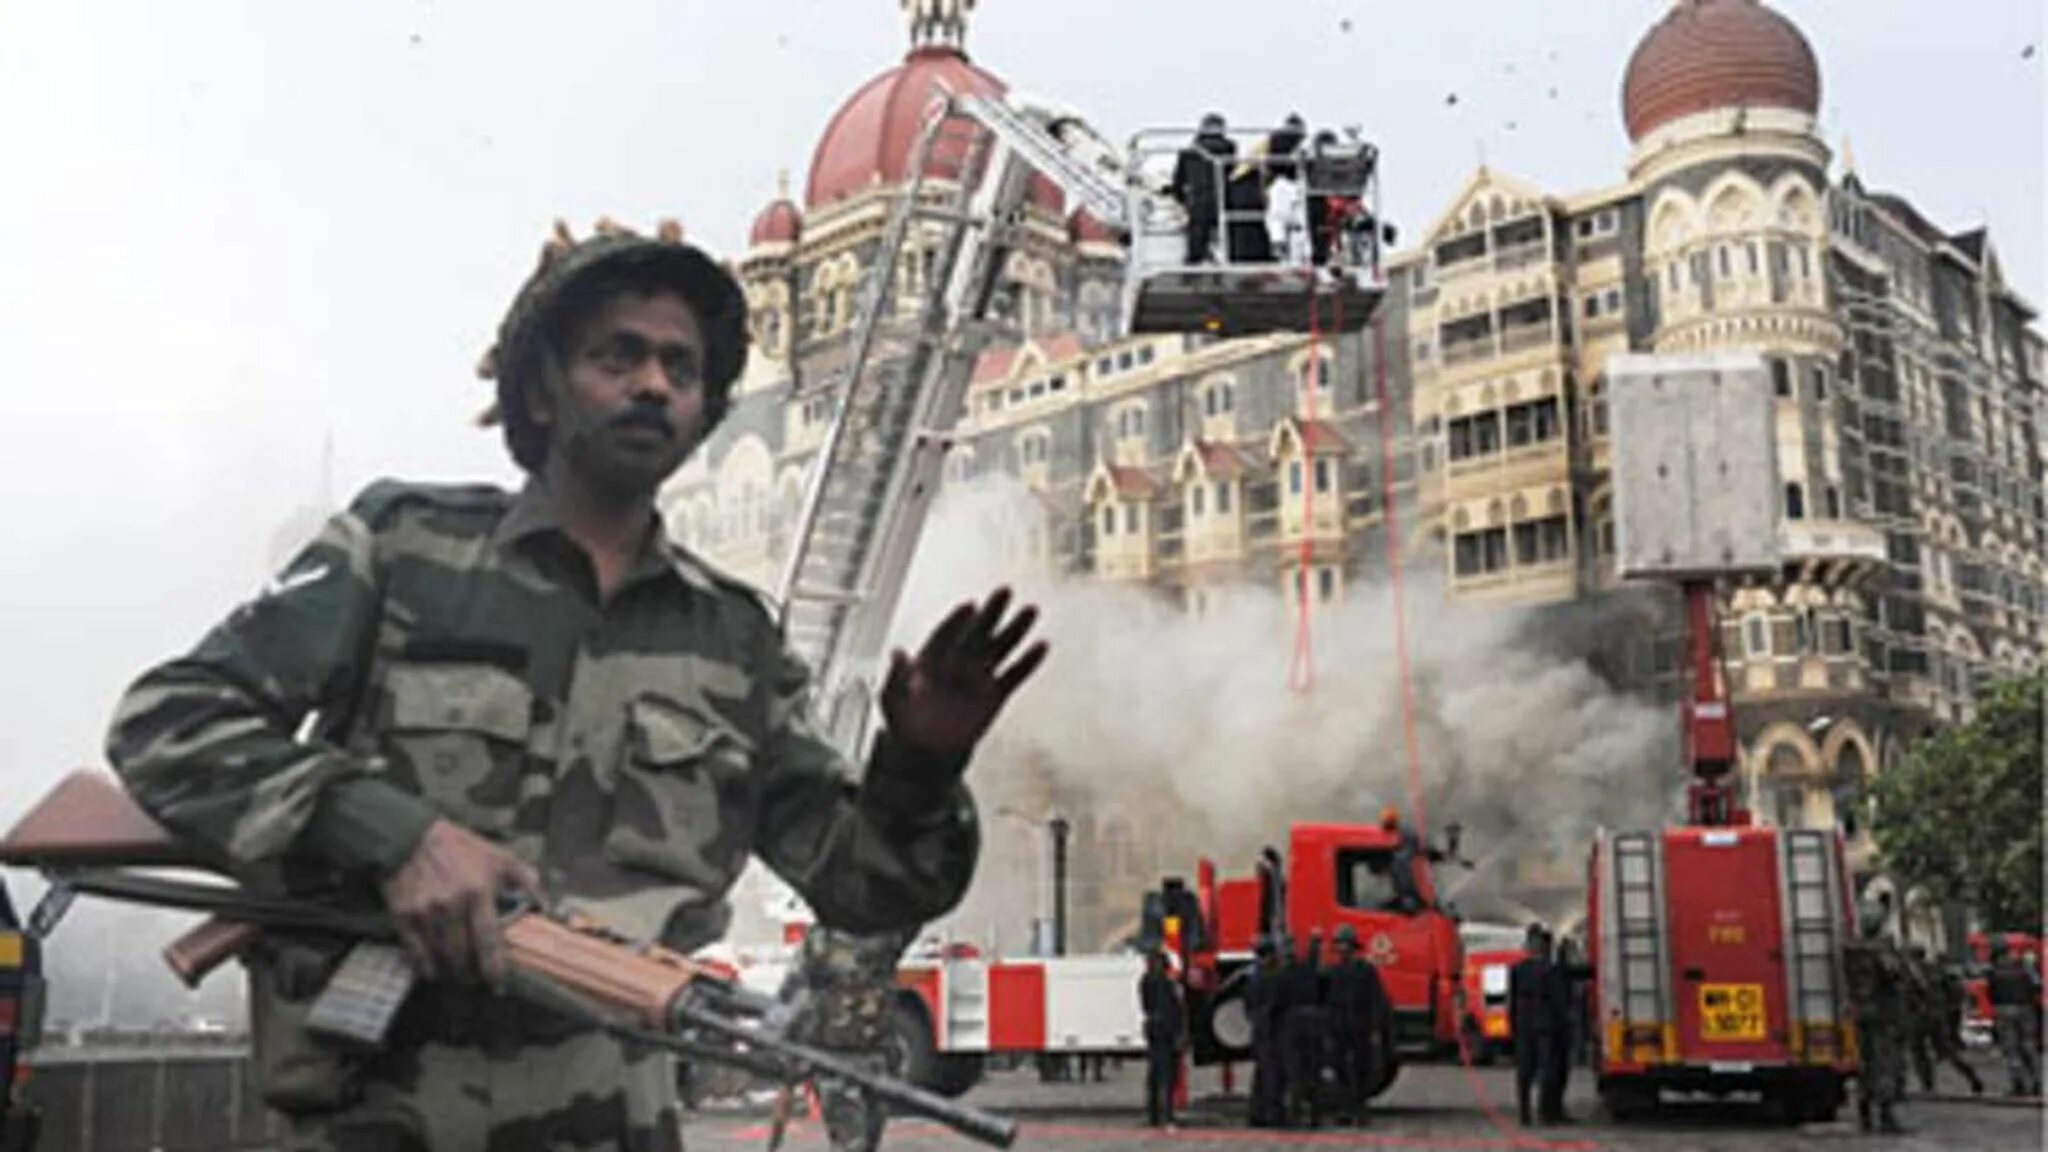 Мумбаи 2008 Тадж Махал теракт. Отель Мумбаи теракт 2008. Теракт в Индии 2008 Тадж Махал. Теракт в Индии 2008 отель Тадж Махал. Нападение на мумбаи